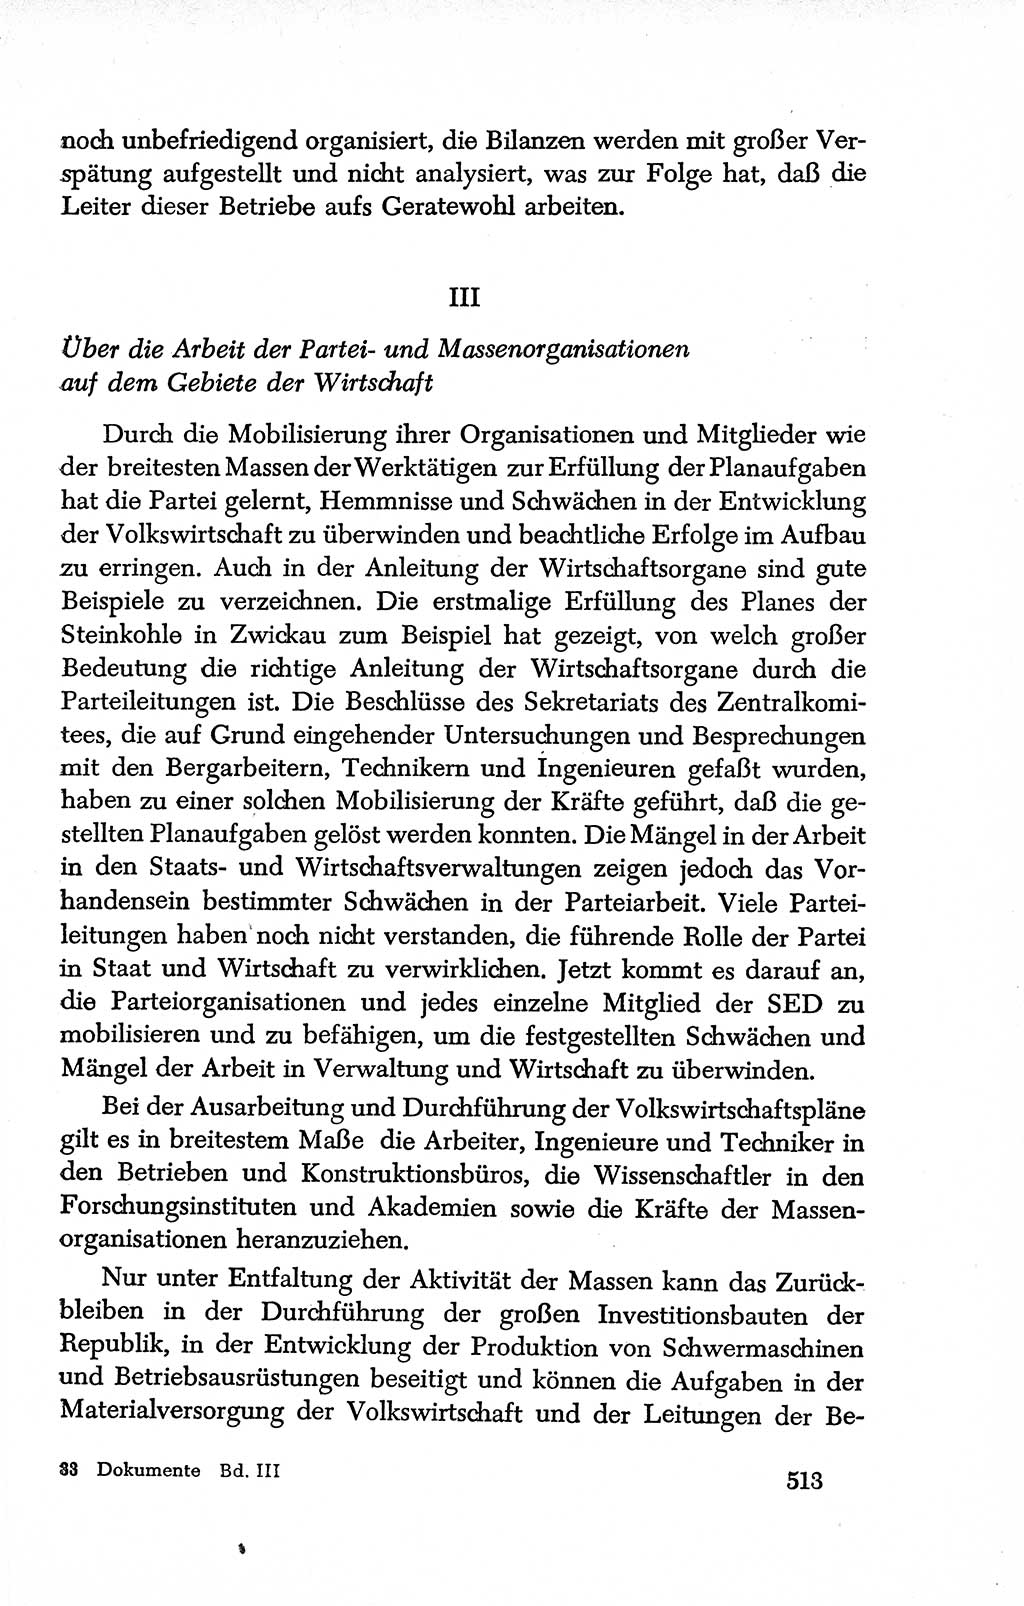 Dokumente der Sozialistischen Einheitspartei Deutschlands (SED) [Deutsche Demokratische Republik (DDR)] 1950-1952, Seite 513 (Dok. SED DDR 1950-1952, S. 513)